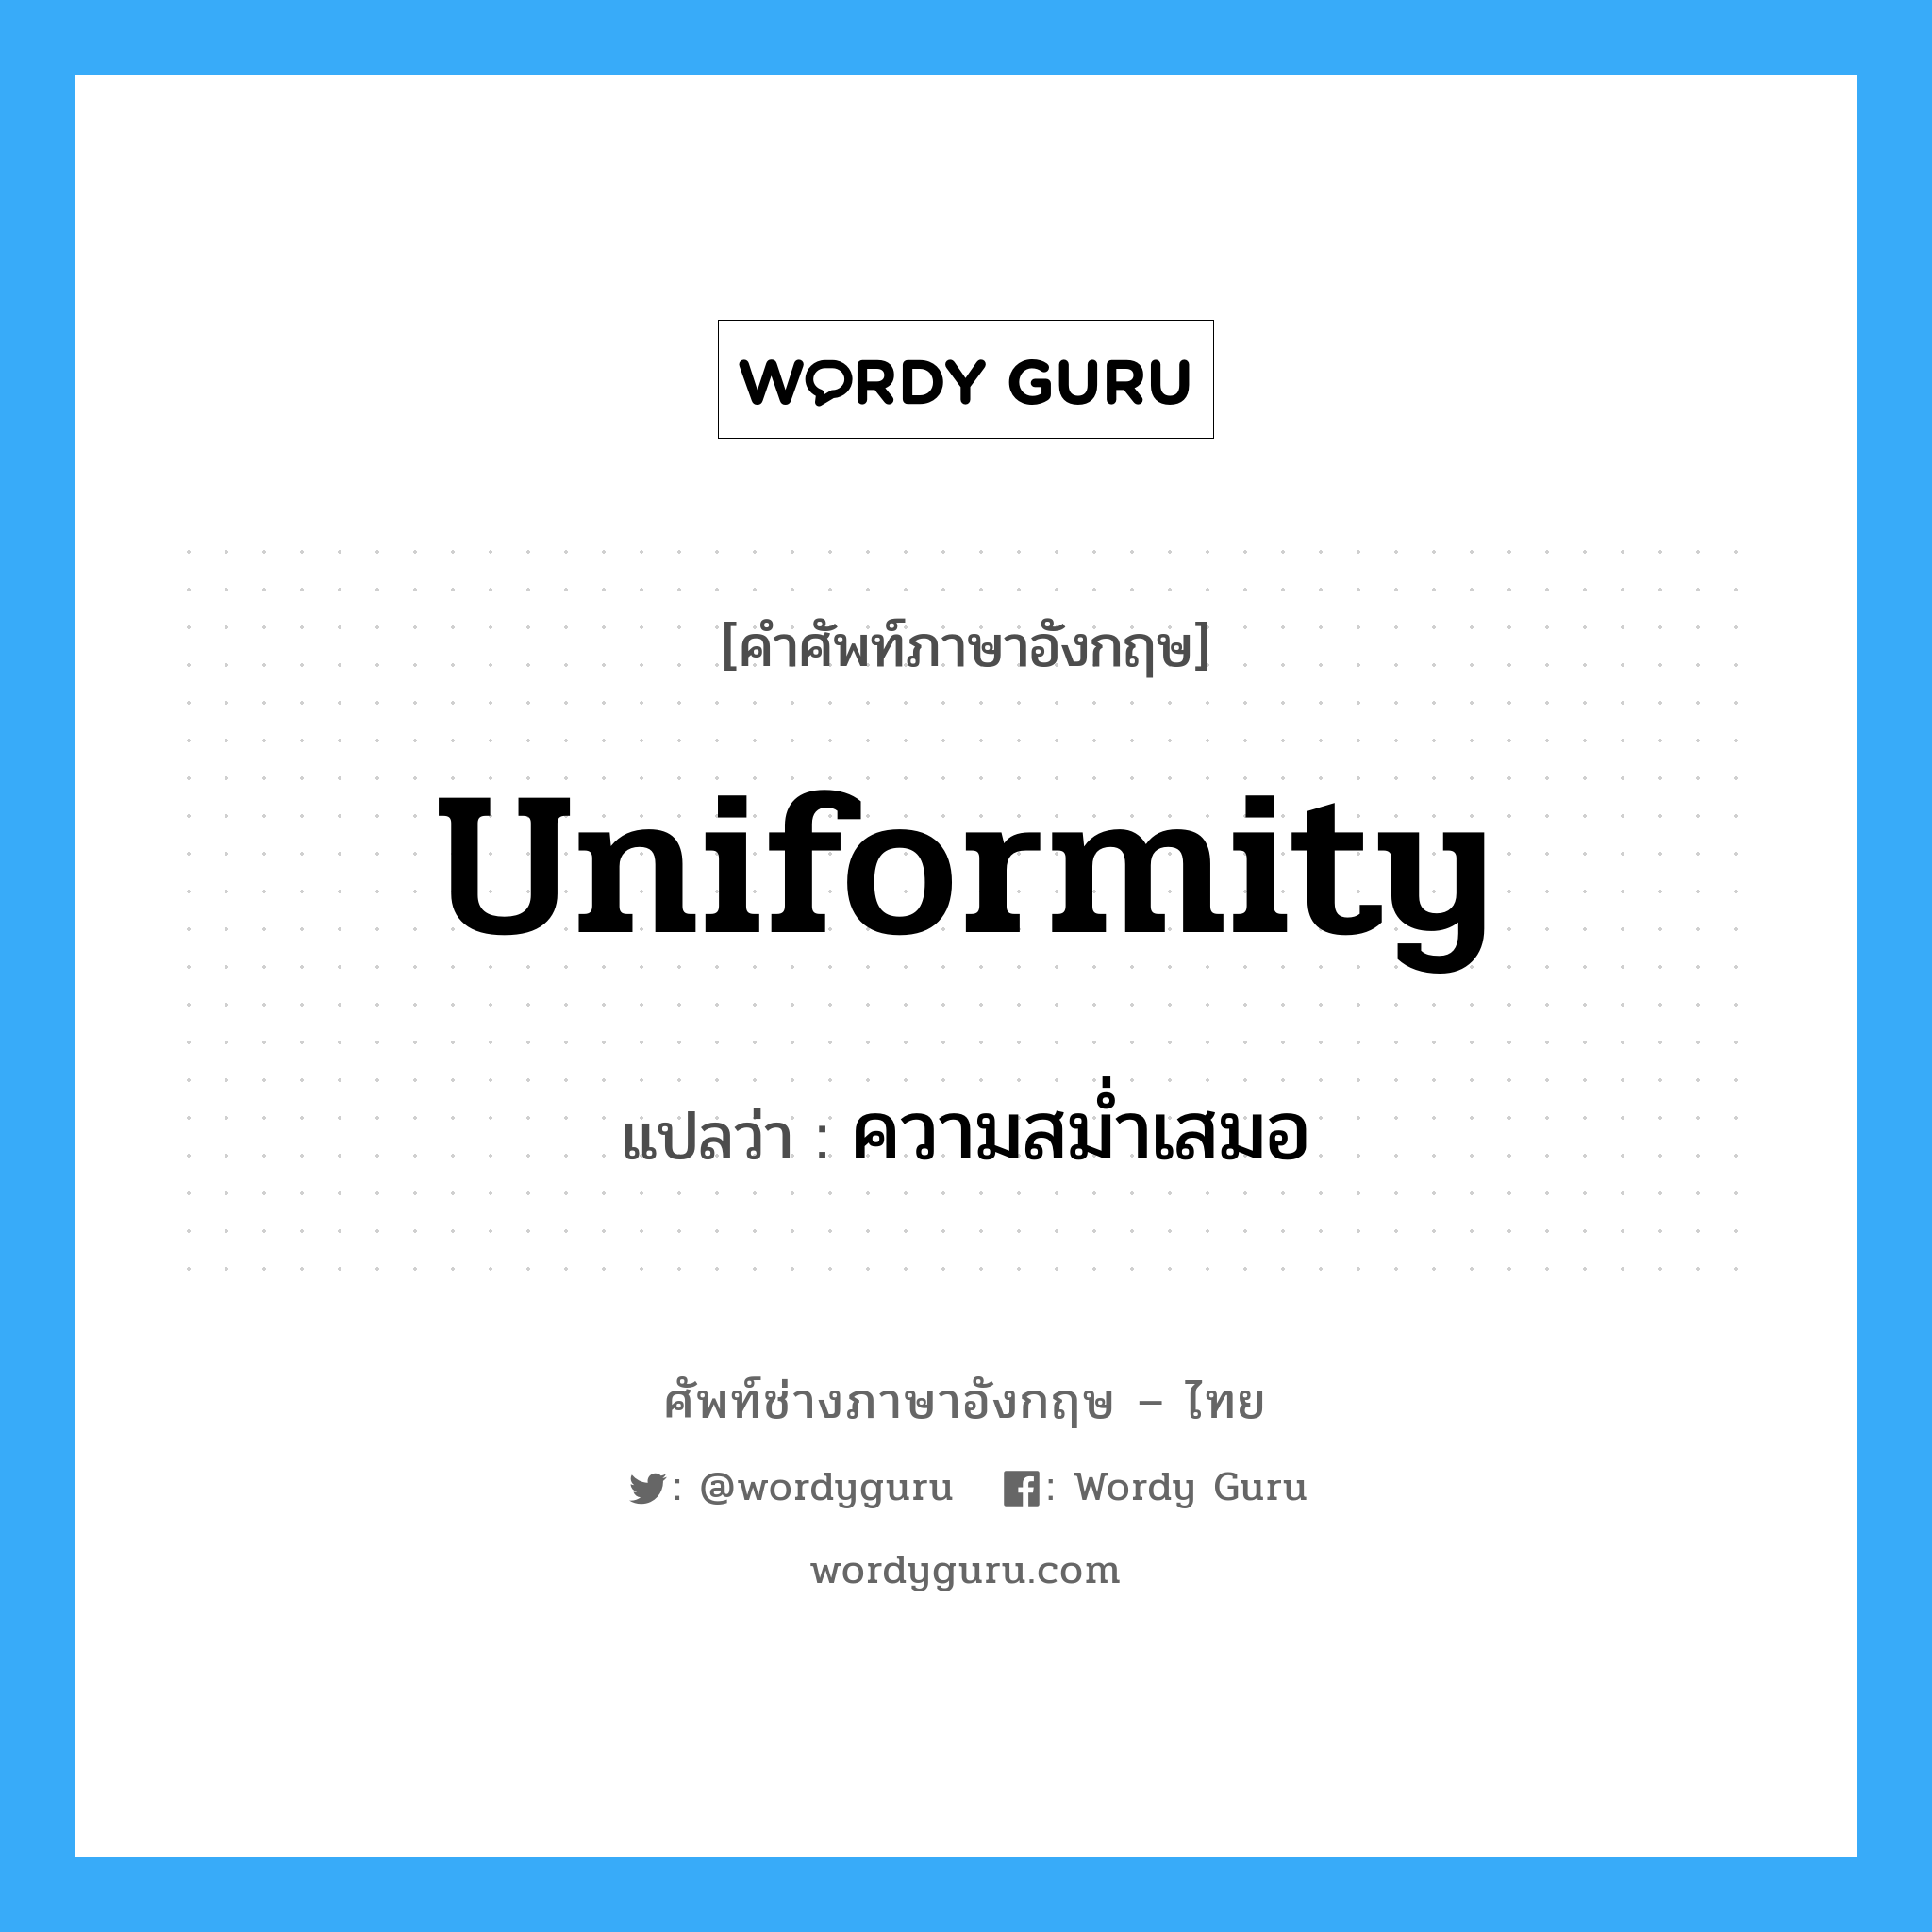 uniformity แปลว่า?, คำศัพท์ช่างภาษาอังกฤษ - ไทย uniformity คำศัพท์ภาษาอังกฤษ uniformity แปลว่า ความสม่ำเสมอ